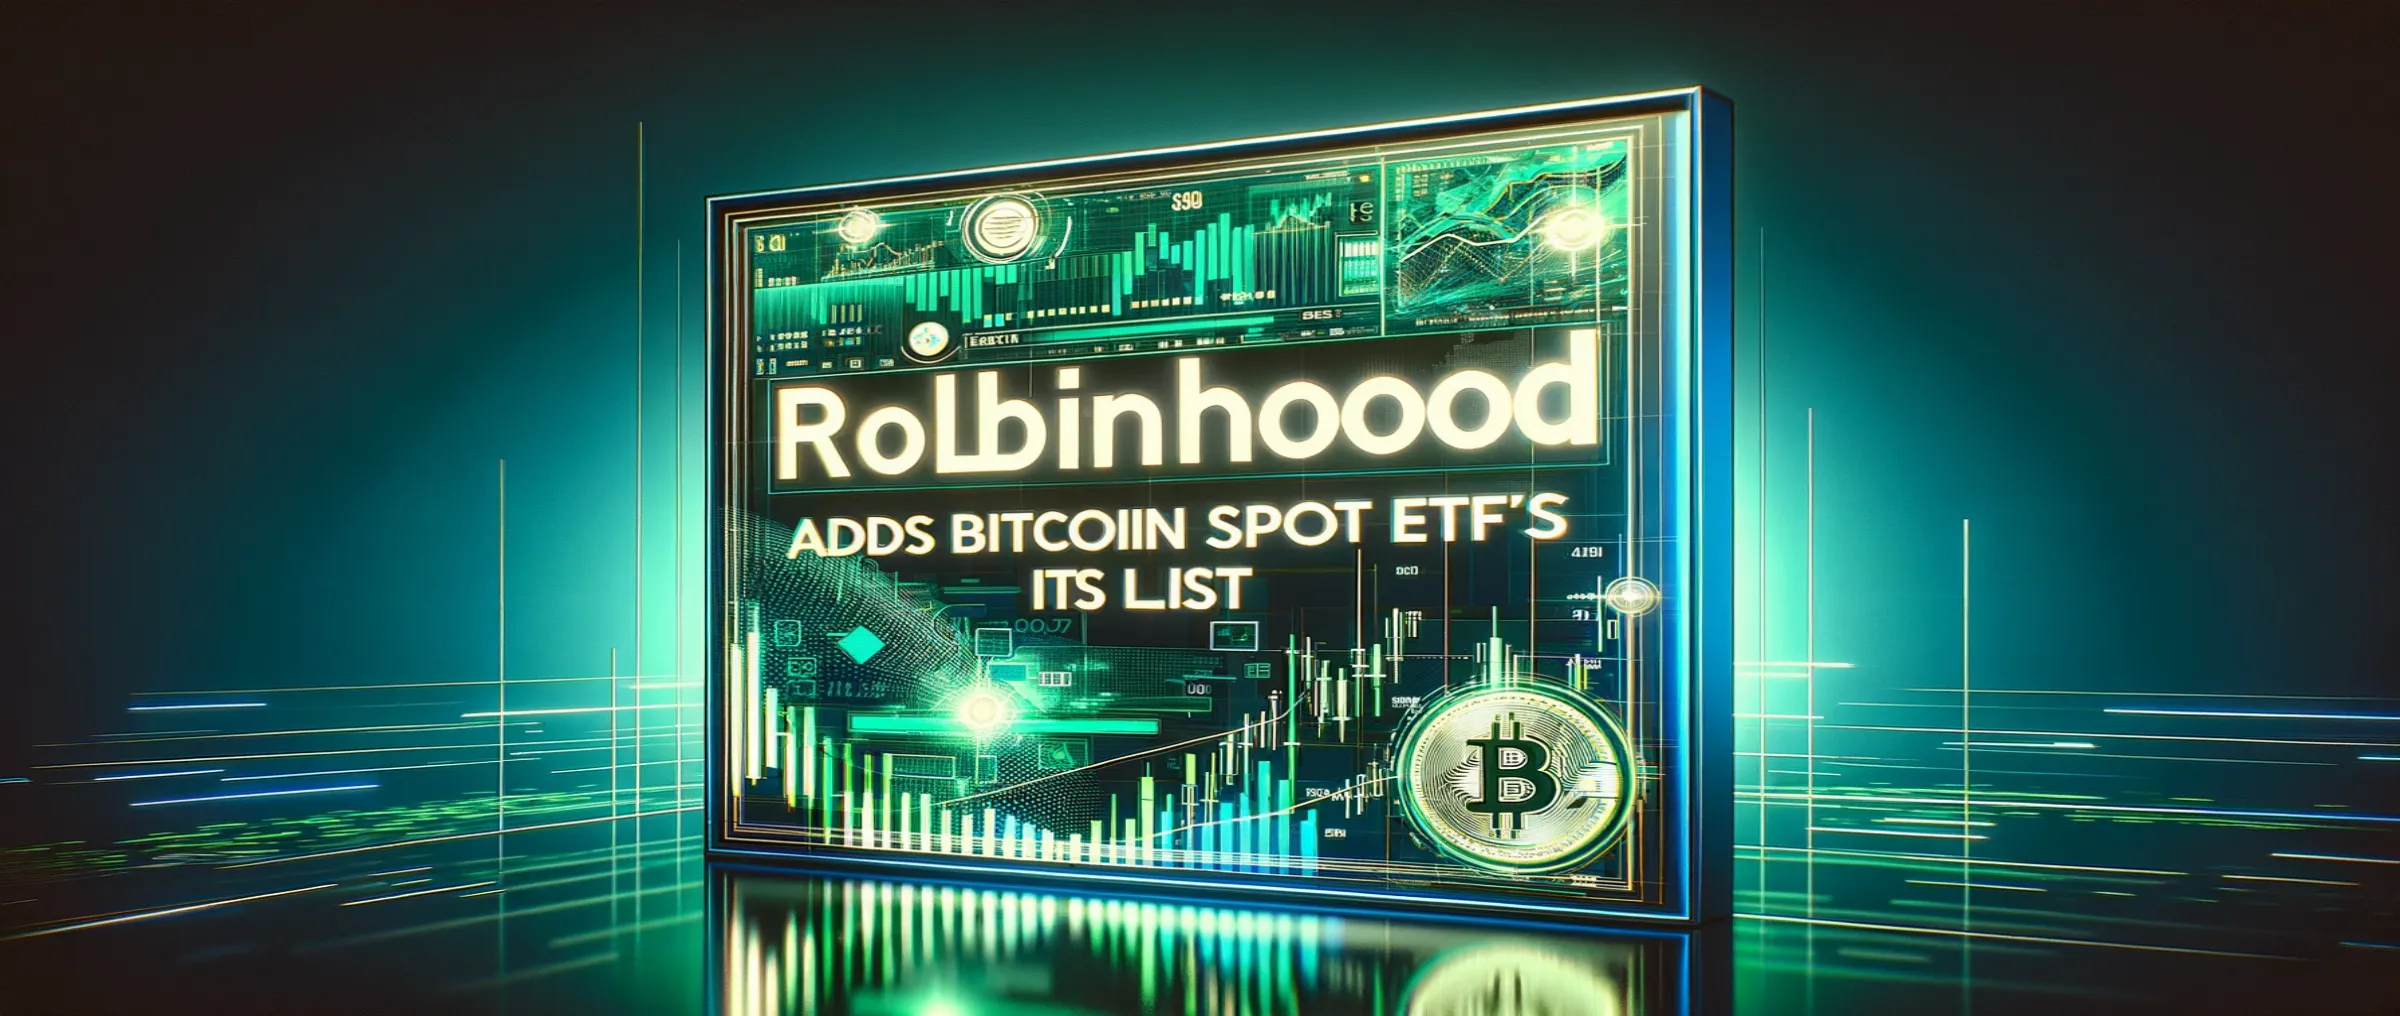 Robinhood will Add Spot Bitcoin ETFs to its list